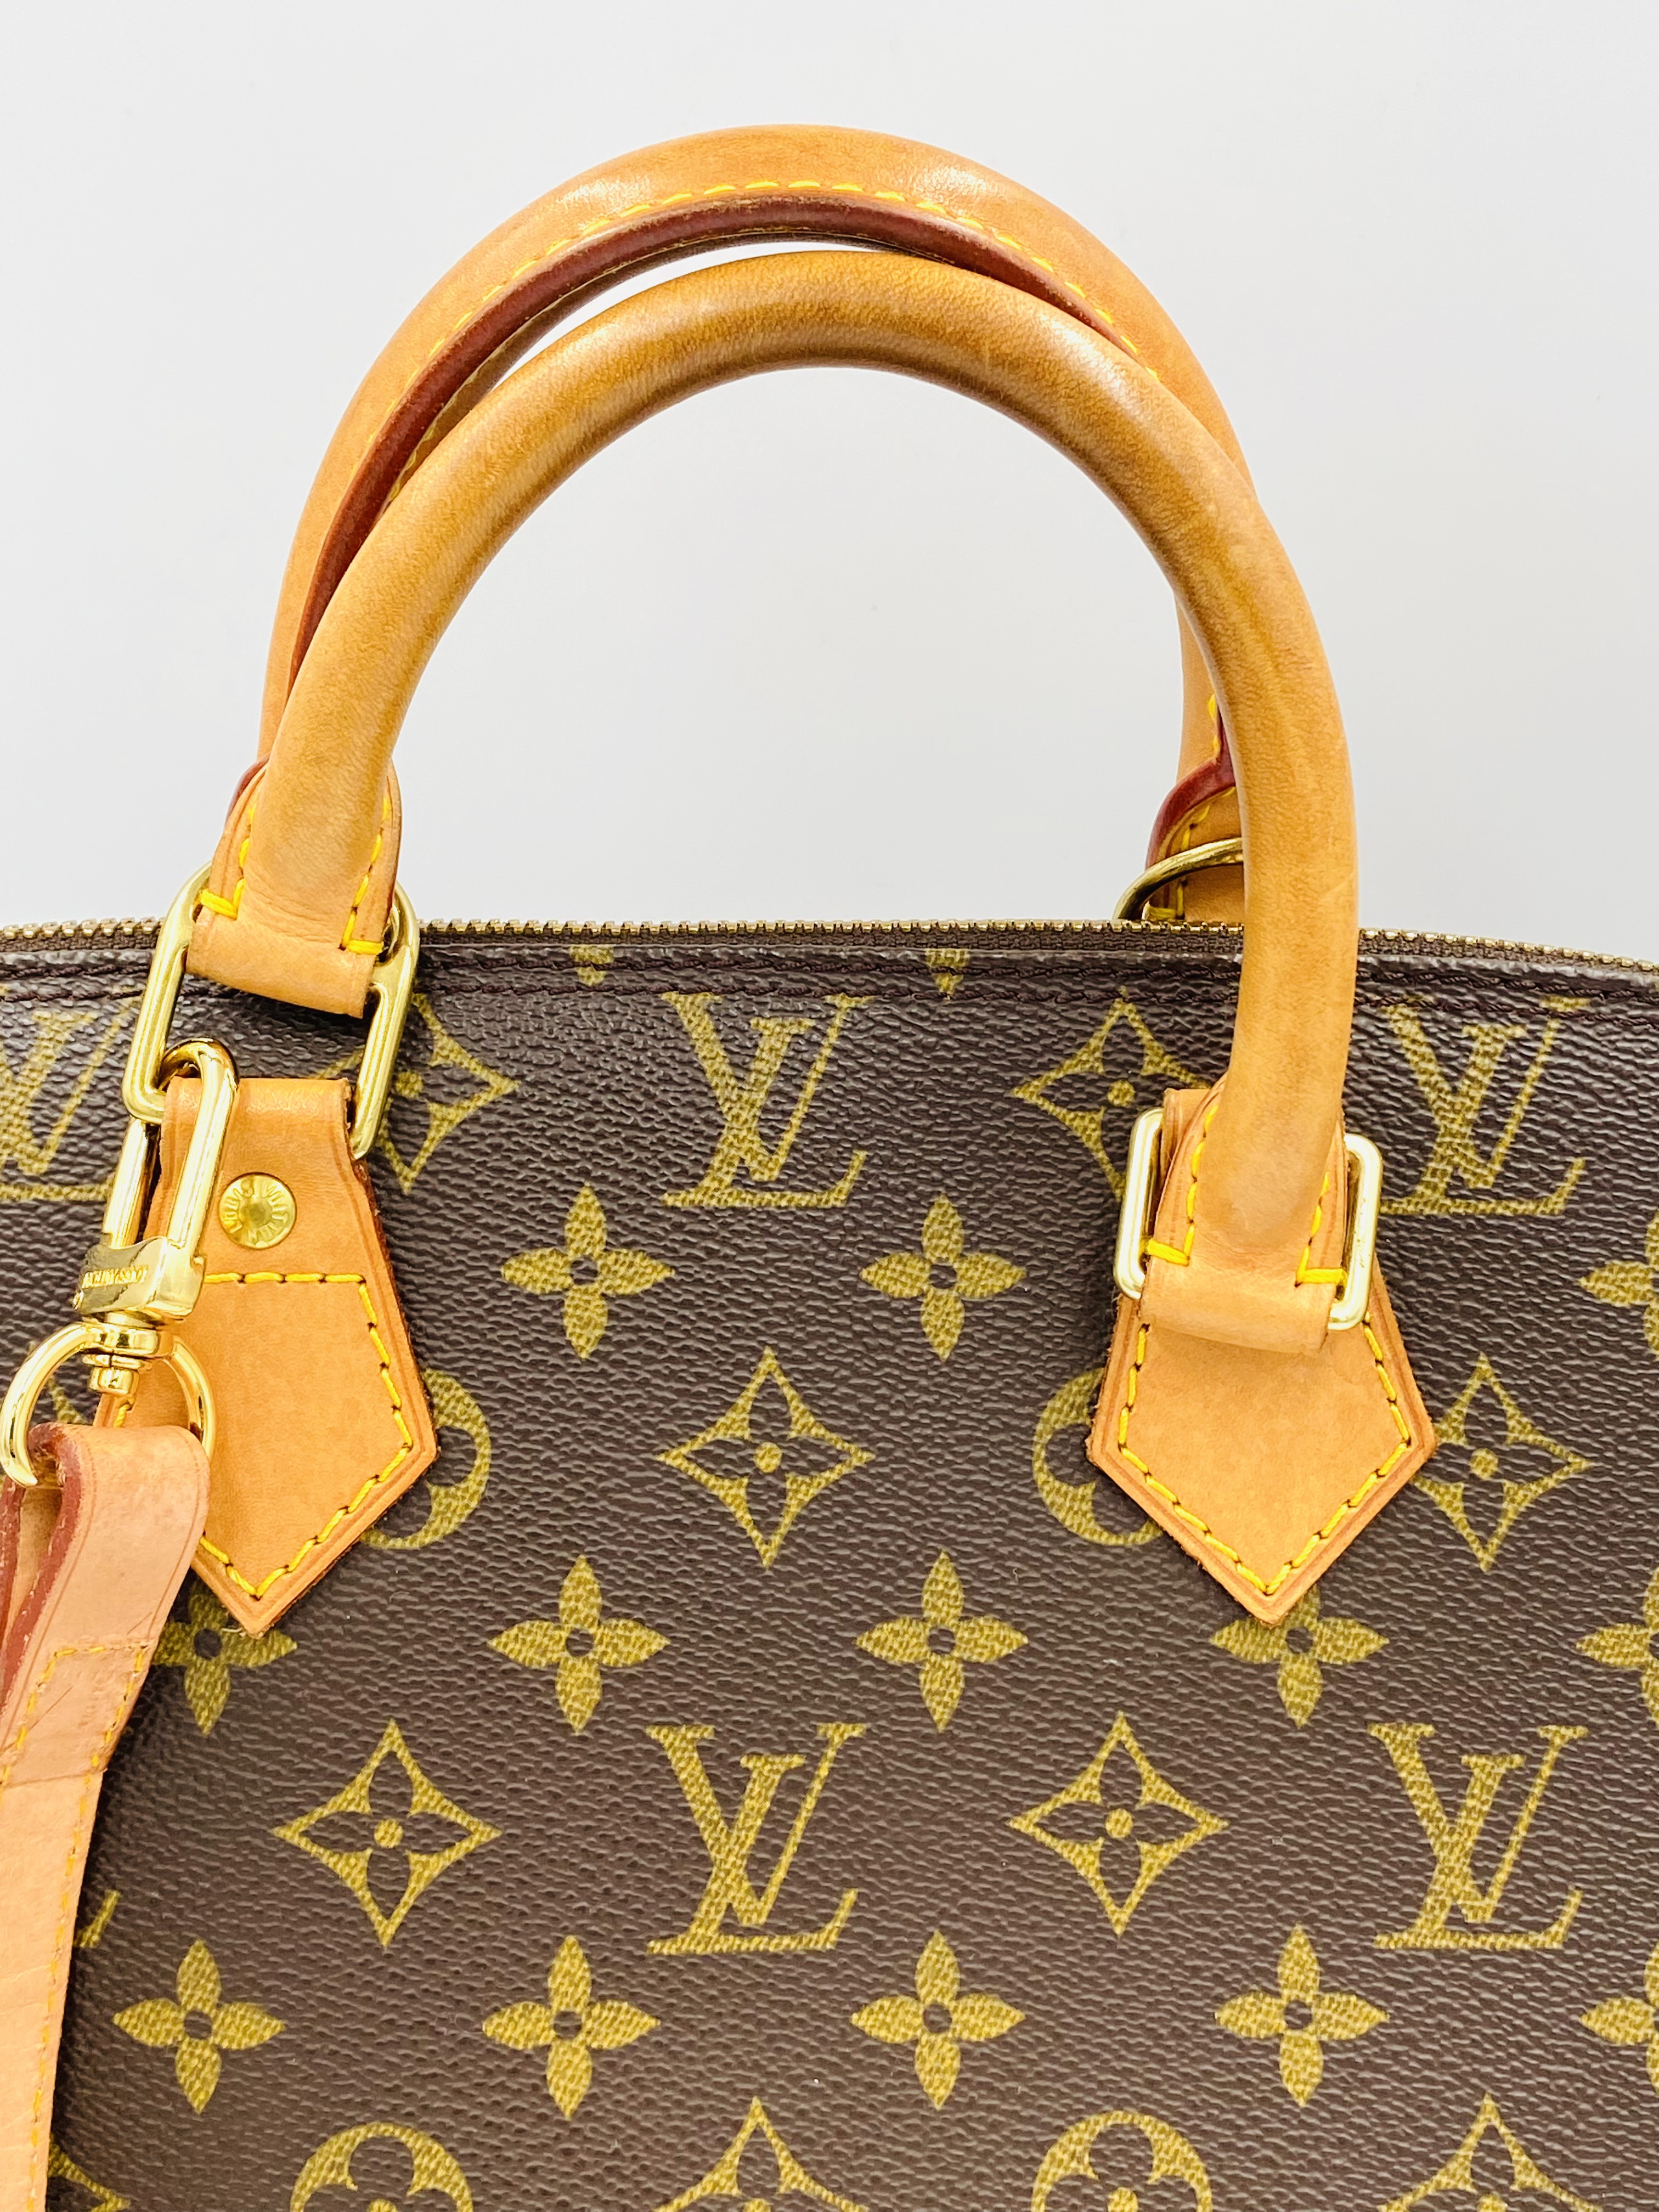 Louis Vuitton Alma handbag in monogram canvas - Image 2 of 7